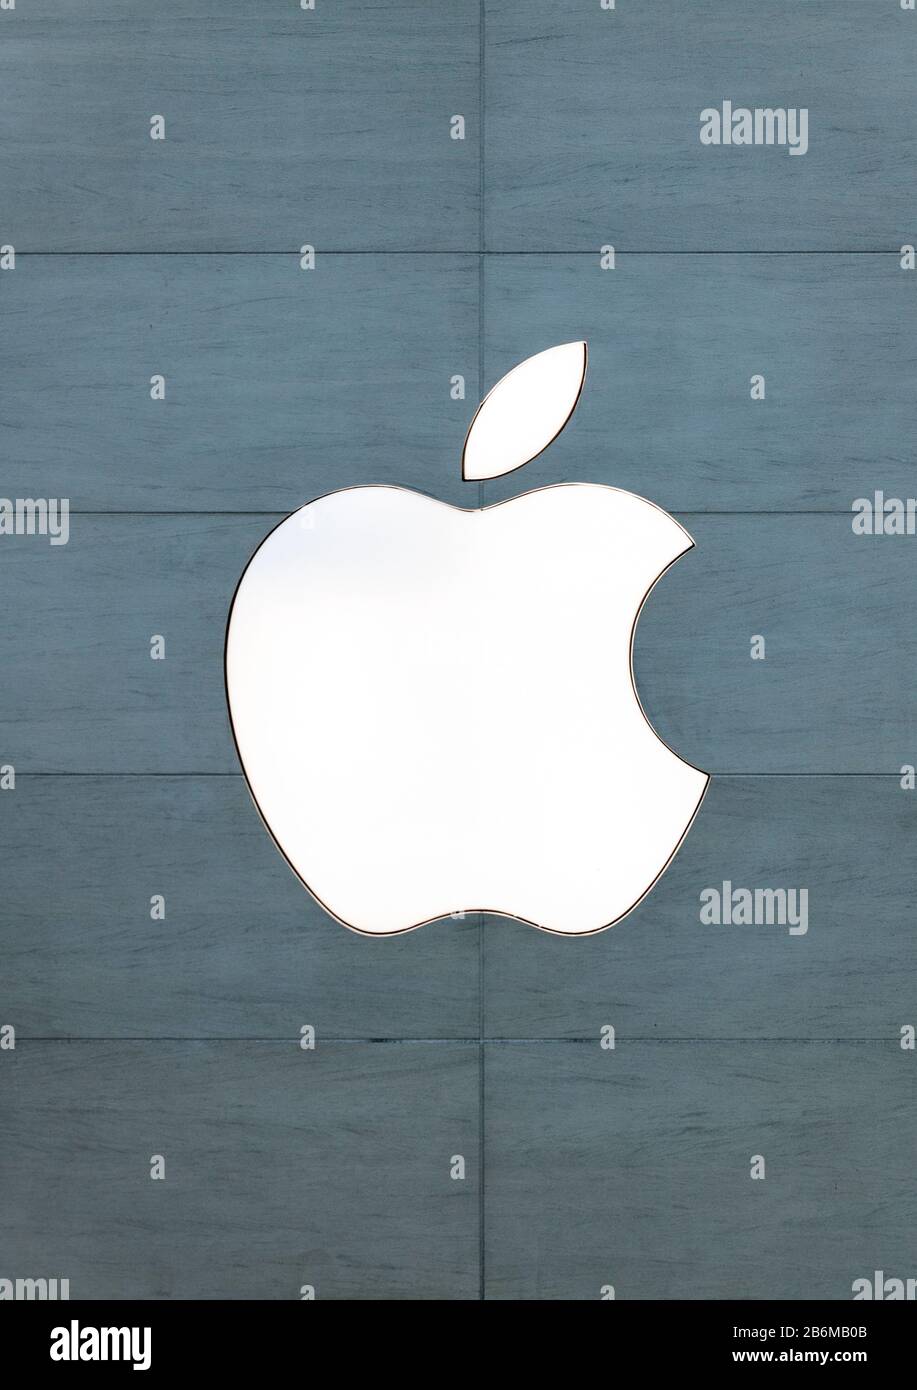 Apple logo on retail store. Stock Photo